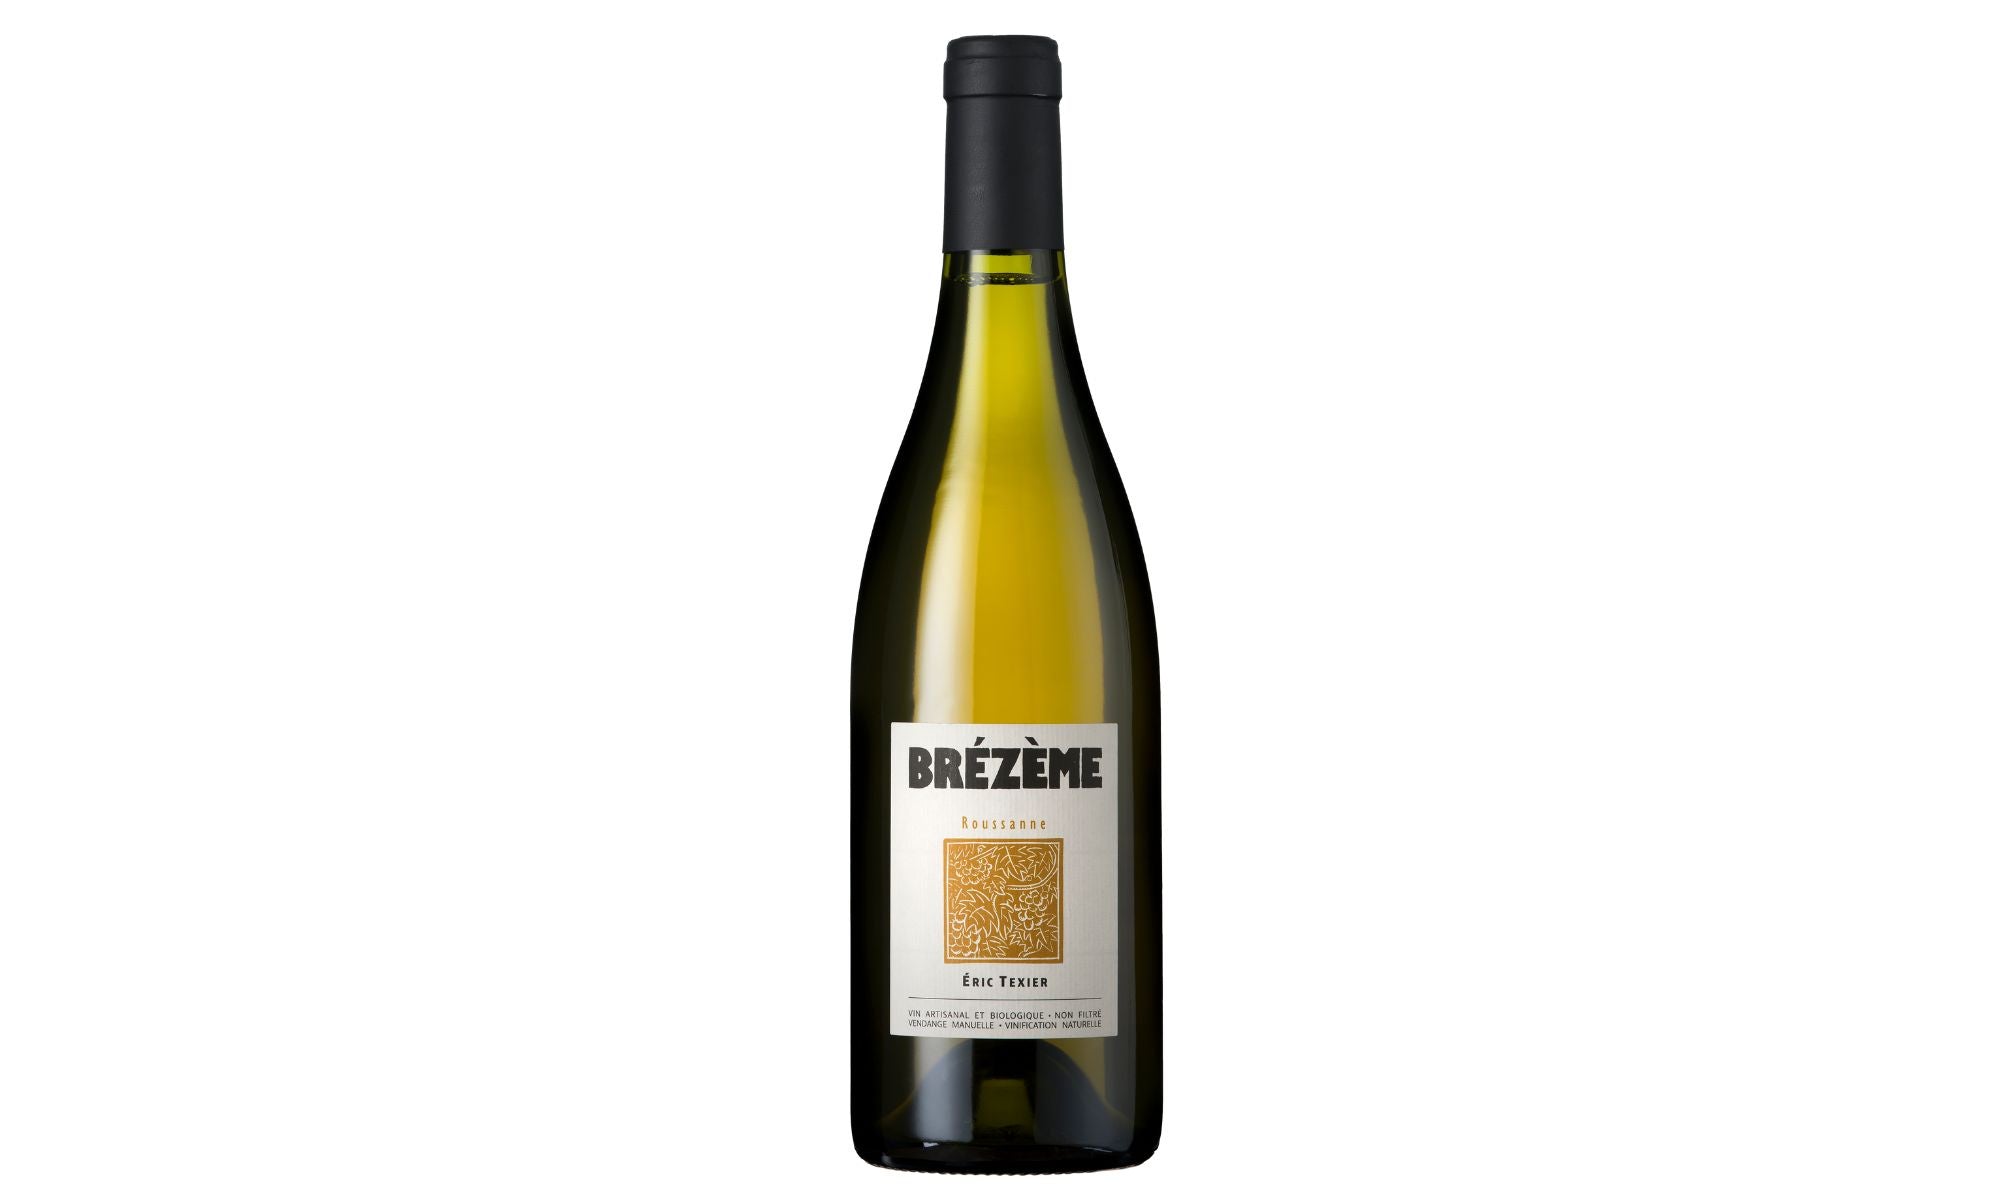 2022 Brezeme Blanc Roussanne, Eric Texier, Côtes du Rhône, Rhône, France